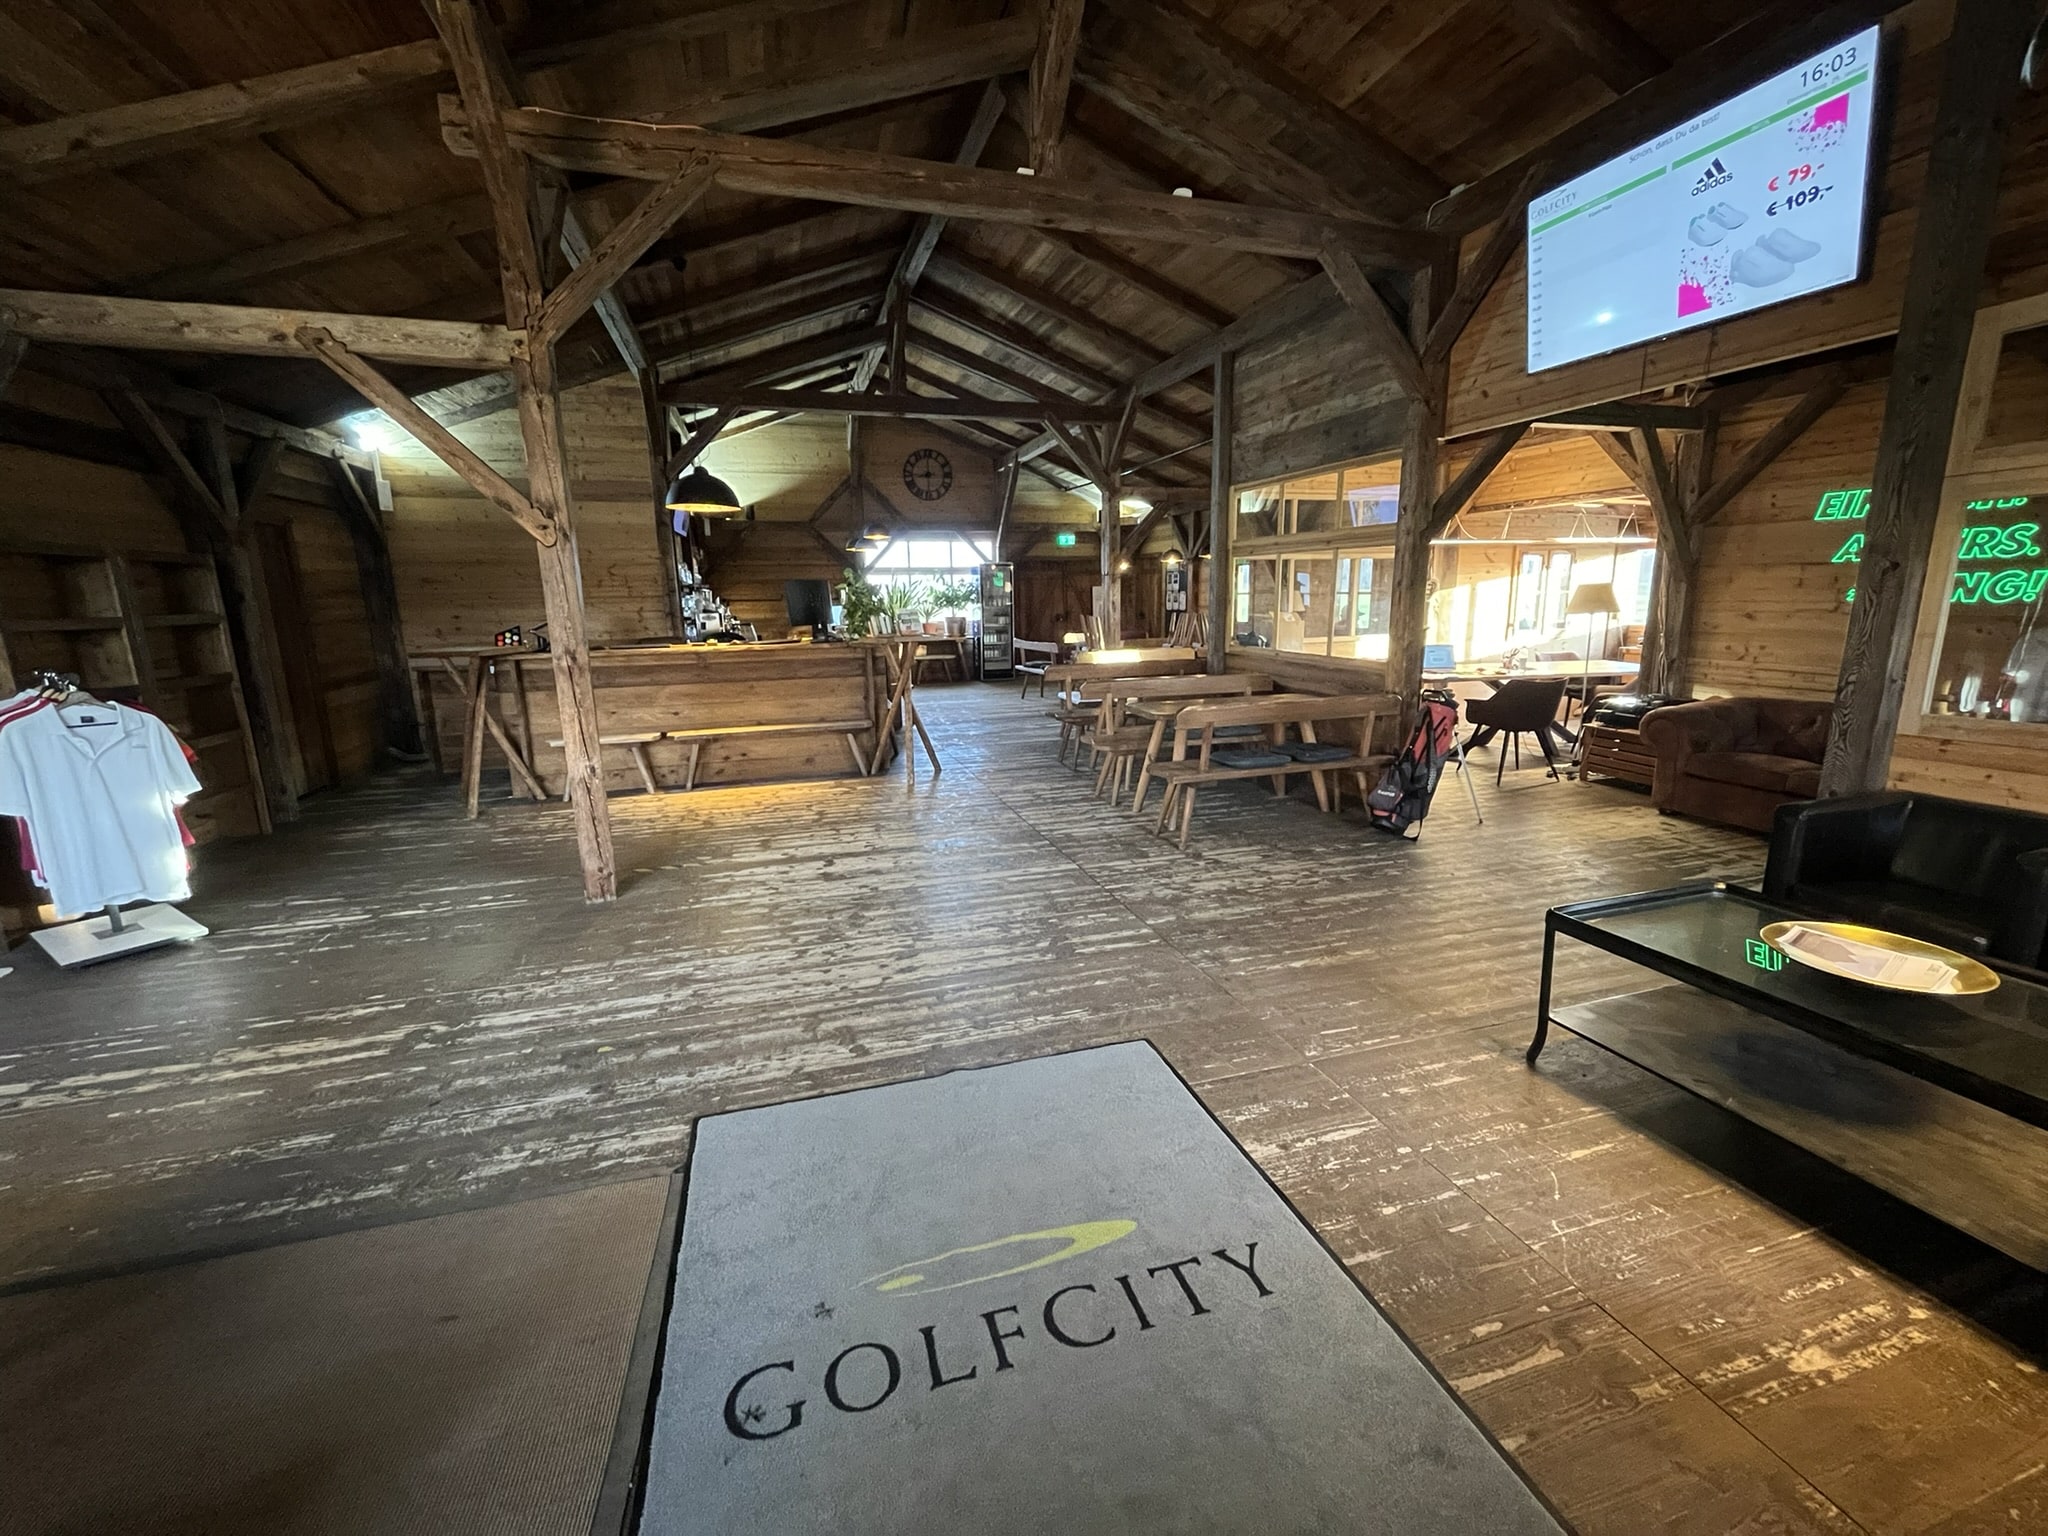 Unser Erfahrungsbericht zur GolfCity in Puchheim